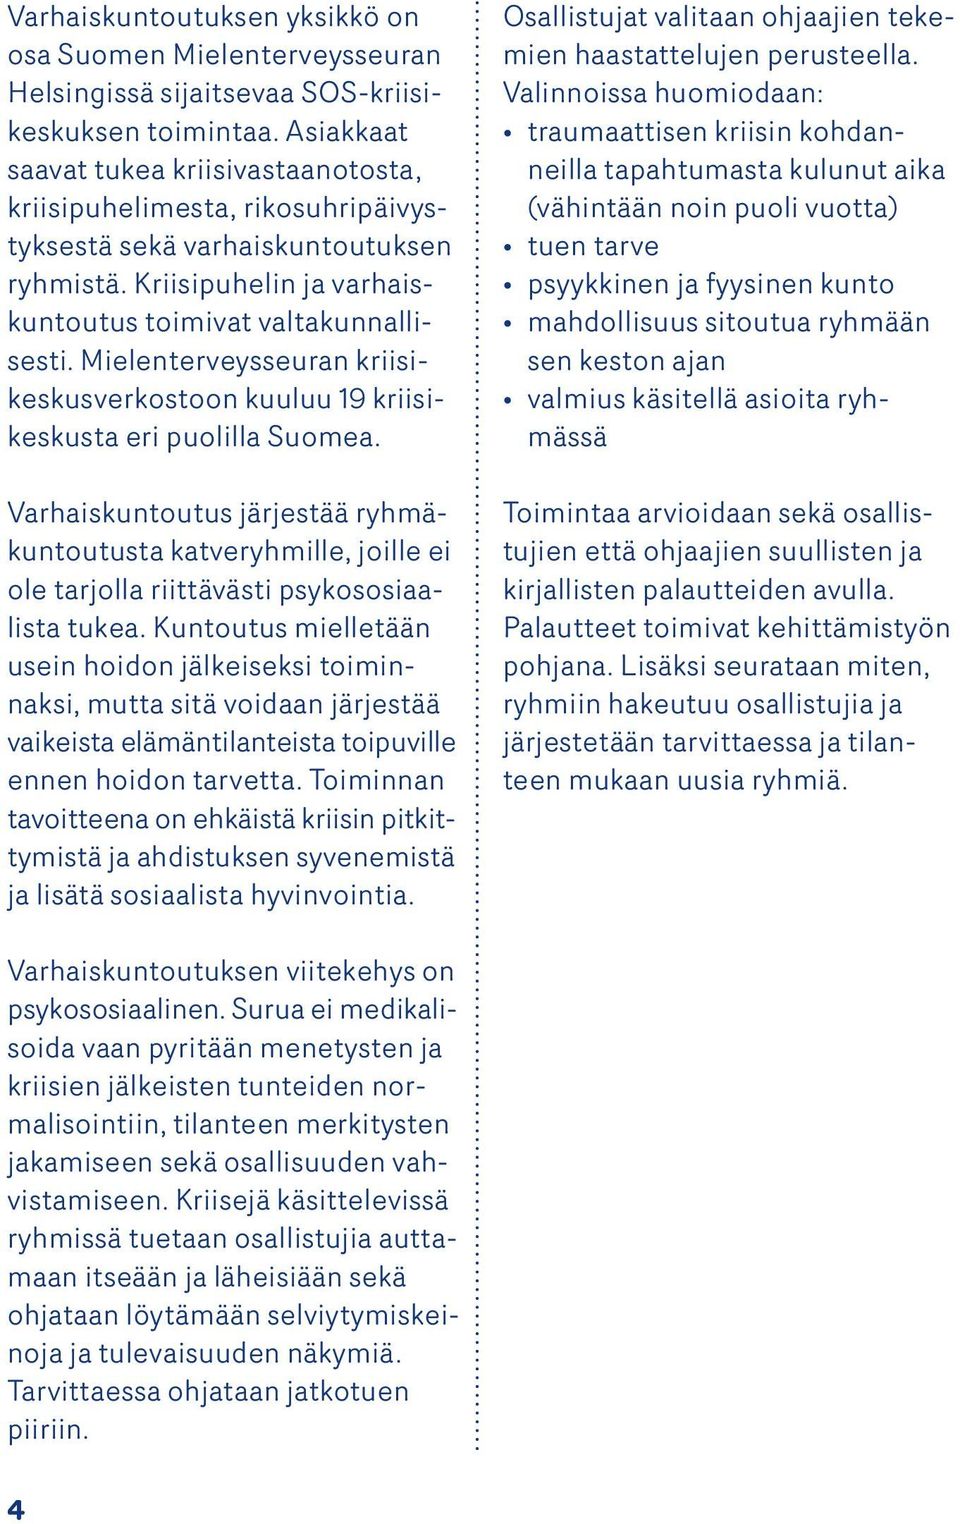 Mielenterveysseuran kriisikeskusverkostoon kuuluu 19 kriisikeskusta eri puolilla Suomea.